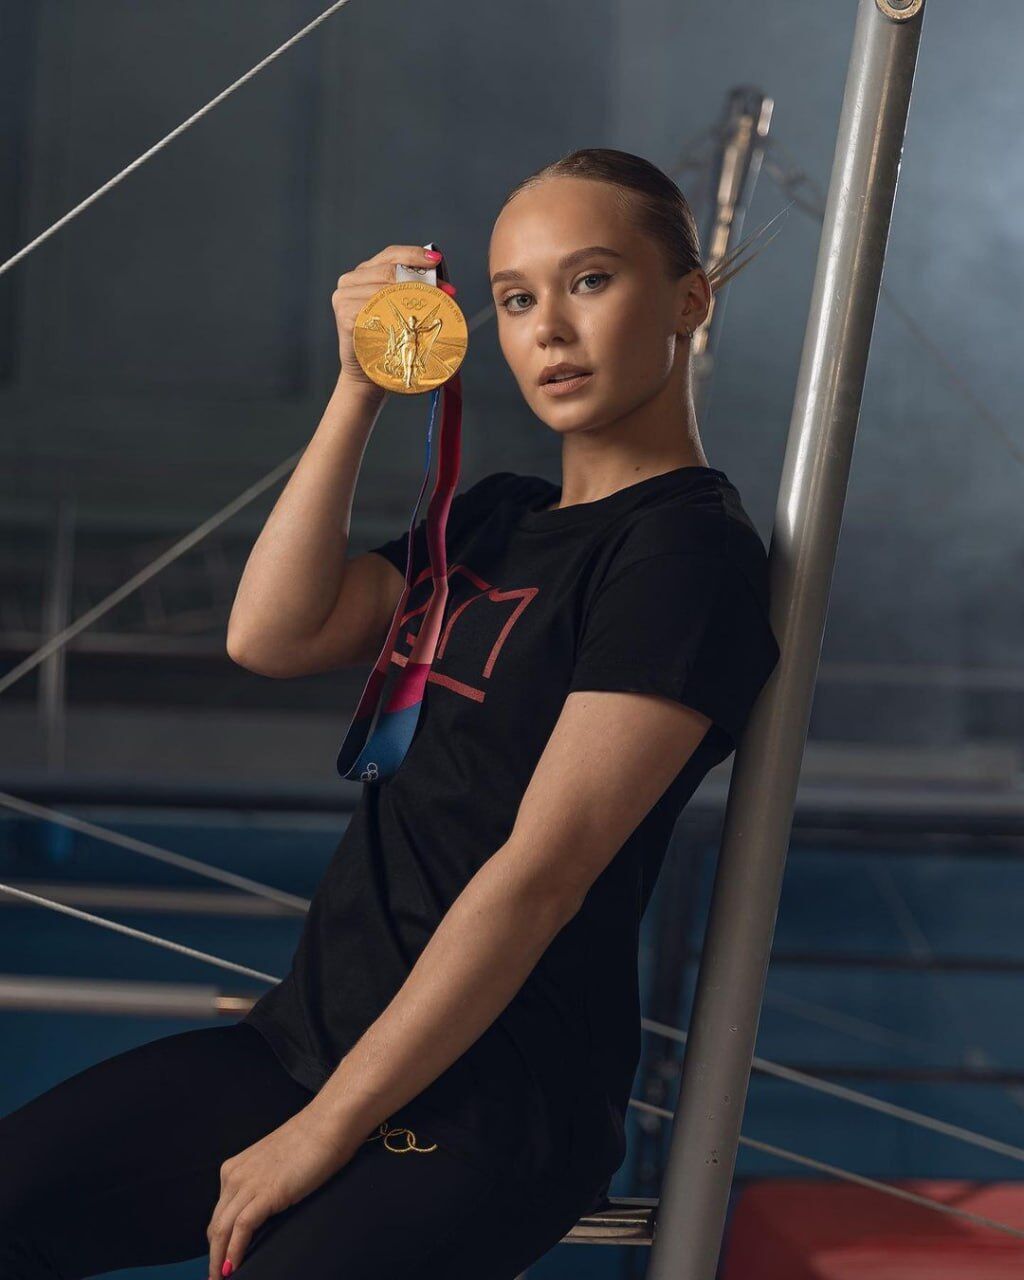 "Взагалі їсти нічого": чемпіонка ОІ з гімнастики з РФ поскаржилася на "виживання" у збірній Росії